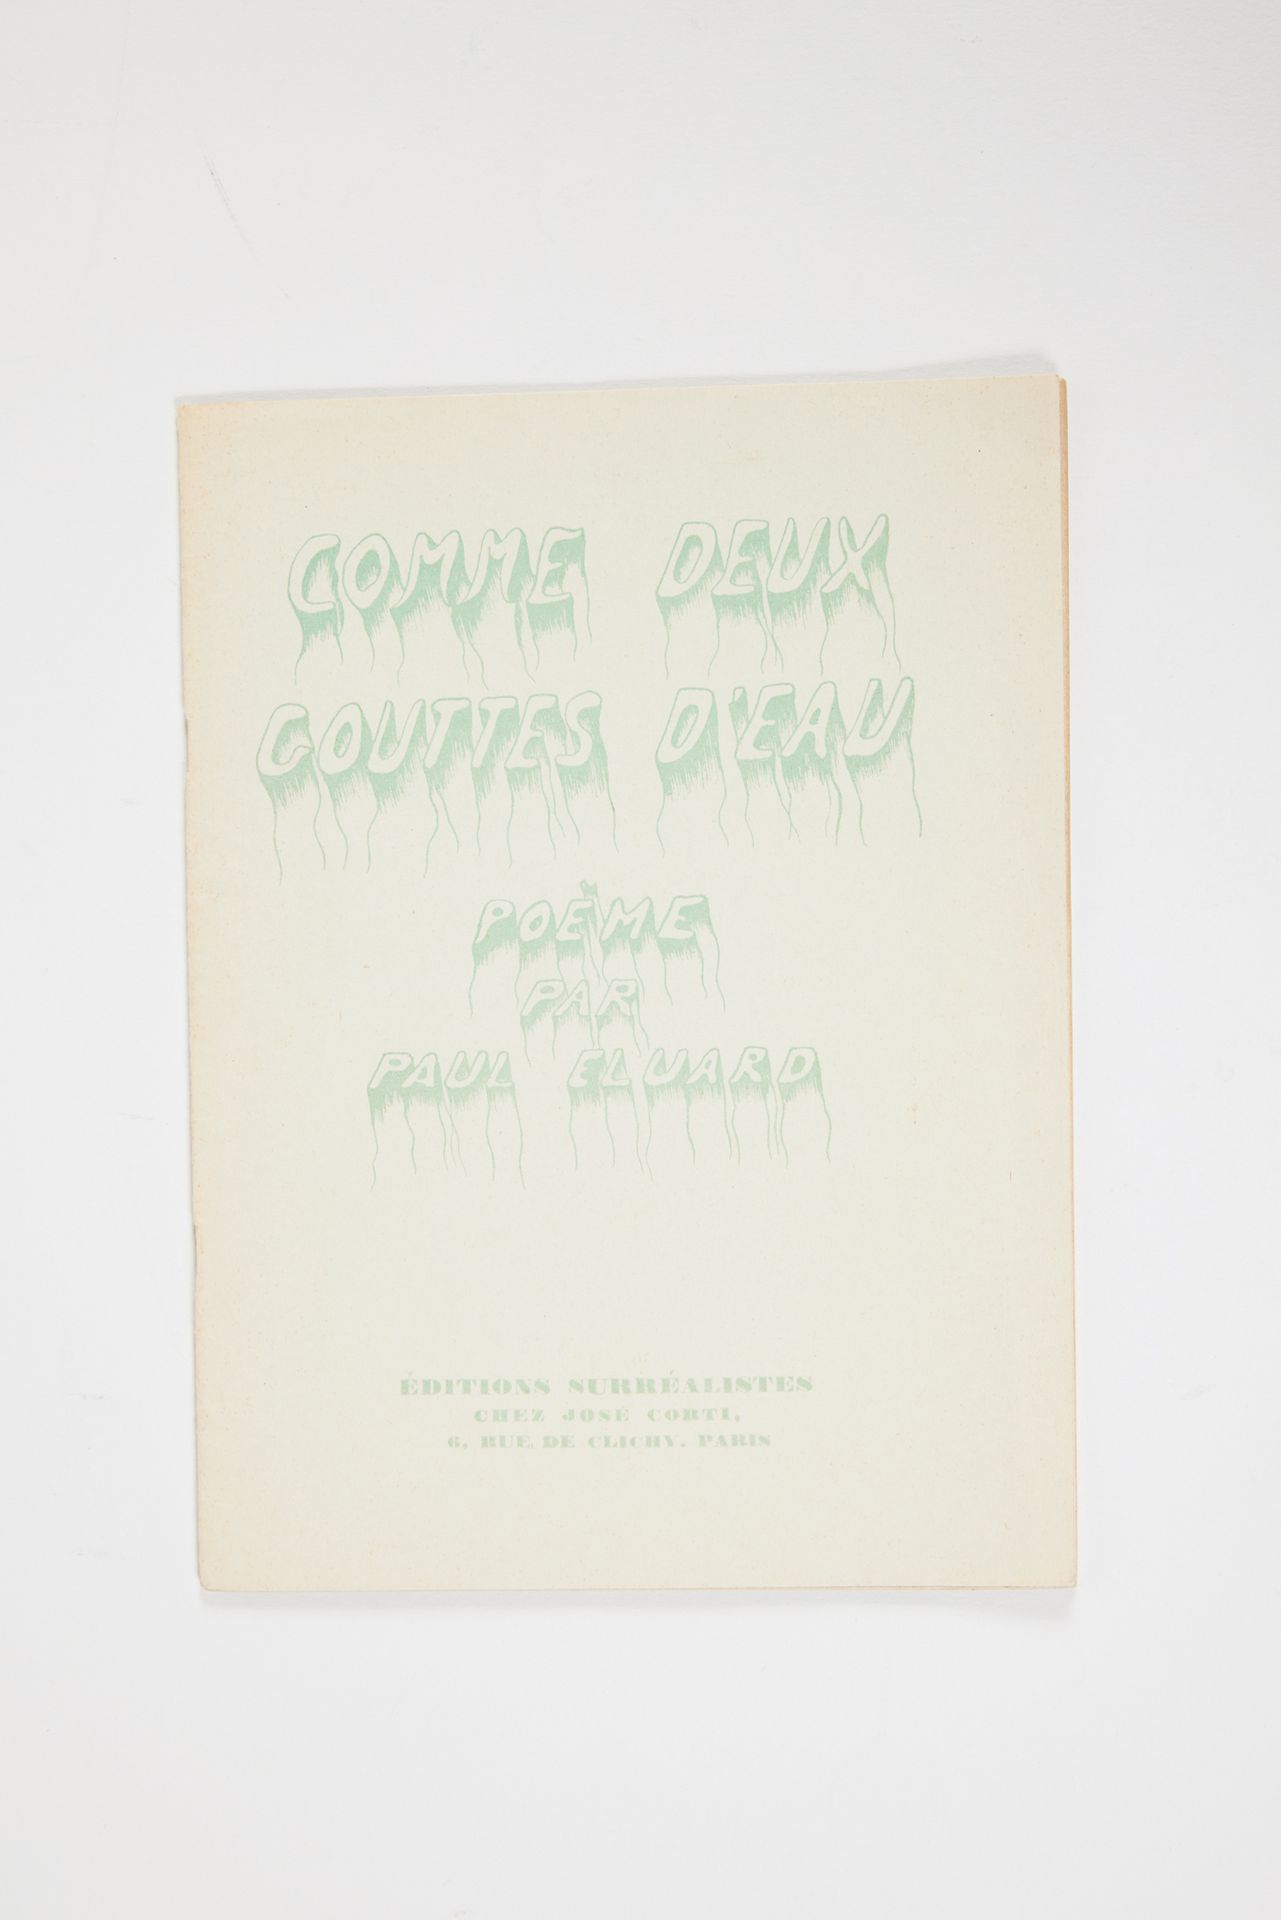 ELUARD, Paul. Comme deux gouttes d'eau, poem by Paul Eluard, Paris, éditions sur&hellip;